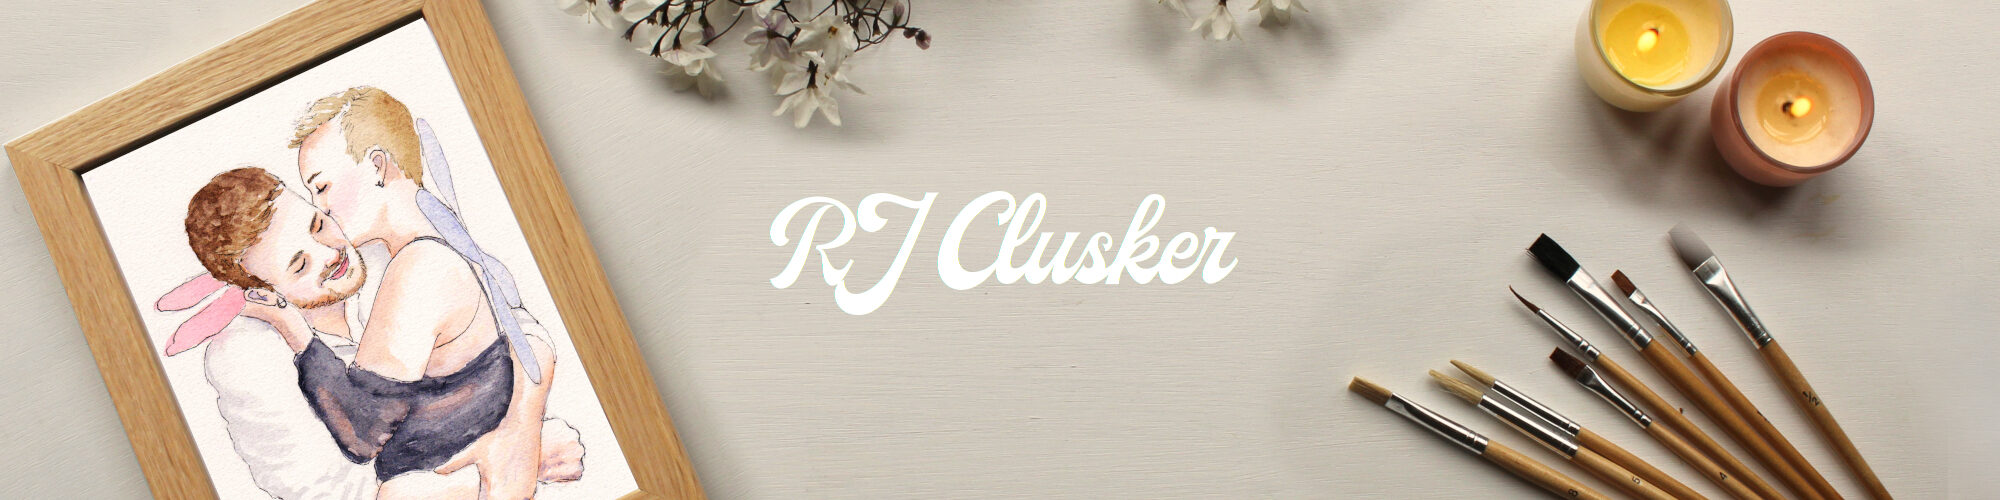 RJ Clusker